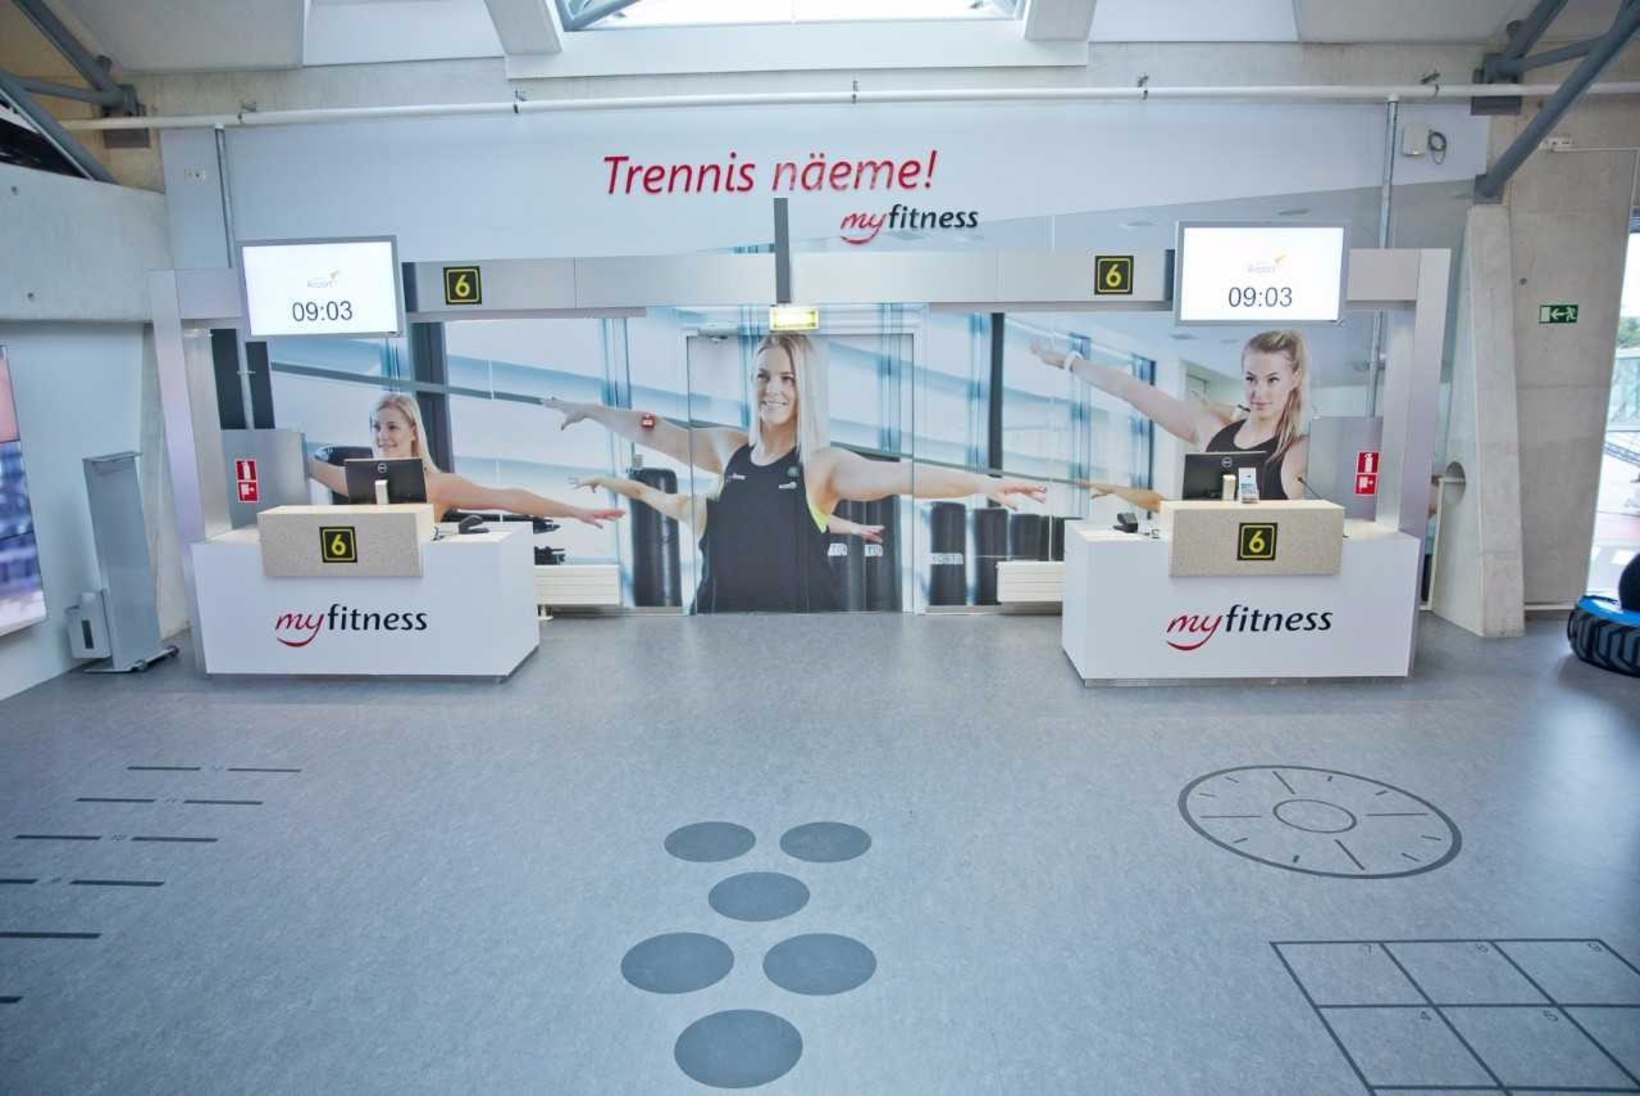 FOTOD | ESIMENE EUROOPAS! Tallinna lennujaamas avati tasuta spordiklubi